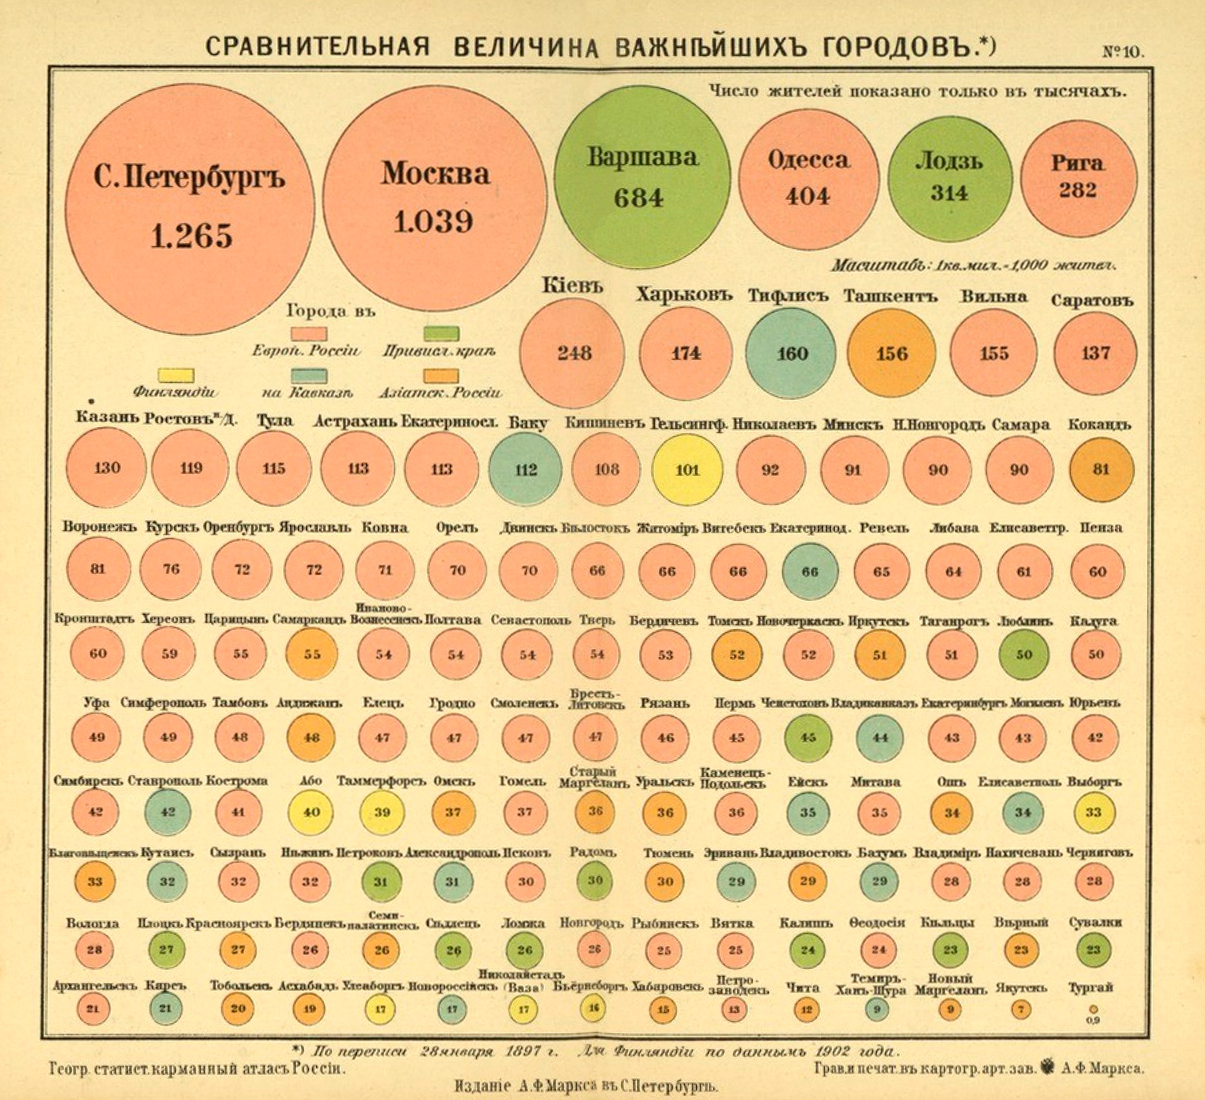 1907 год. Сравнительная величина важнейших городов